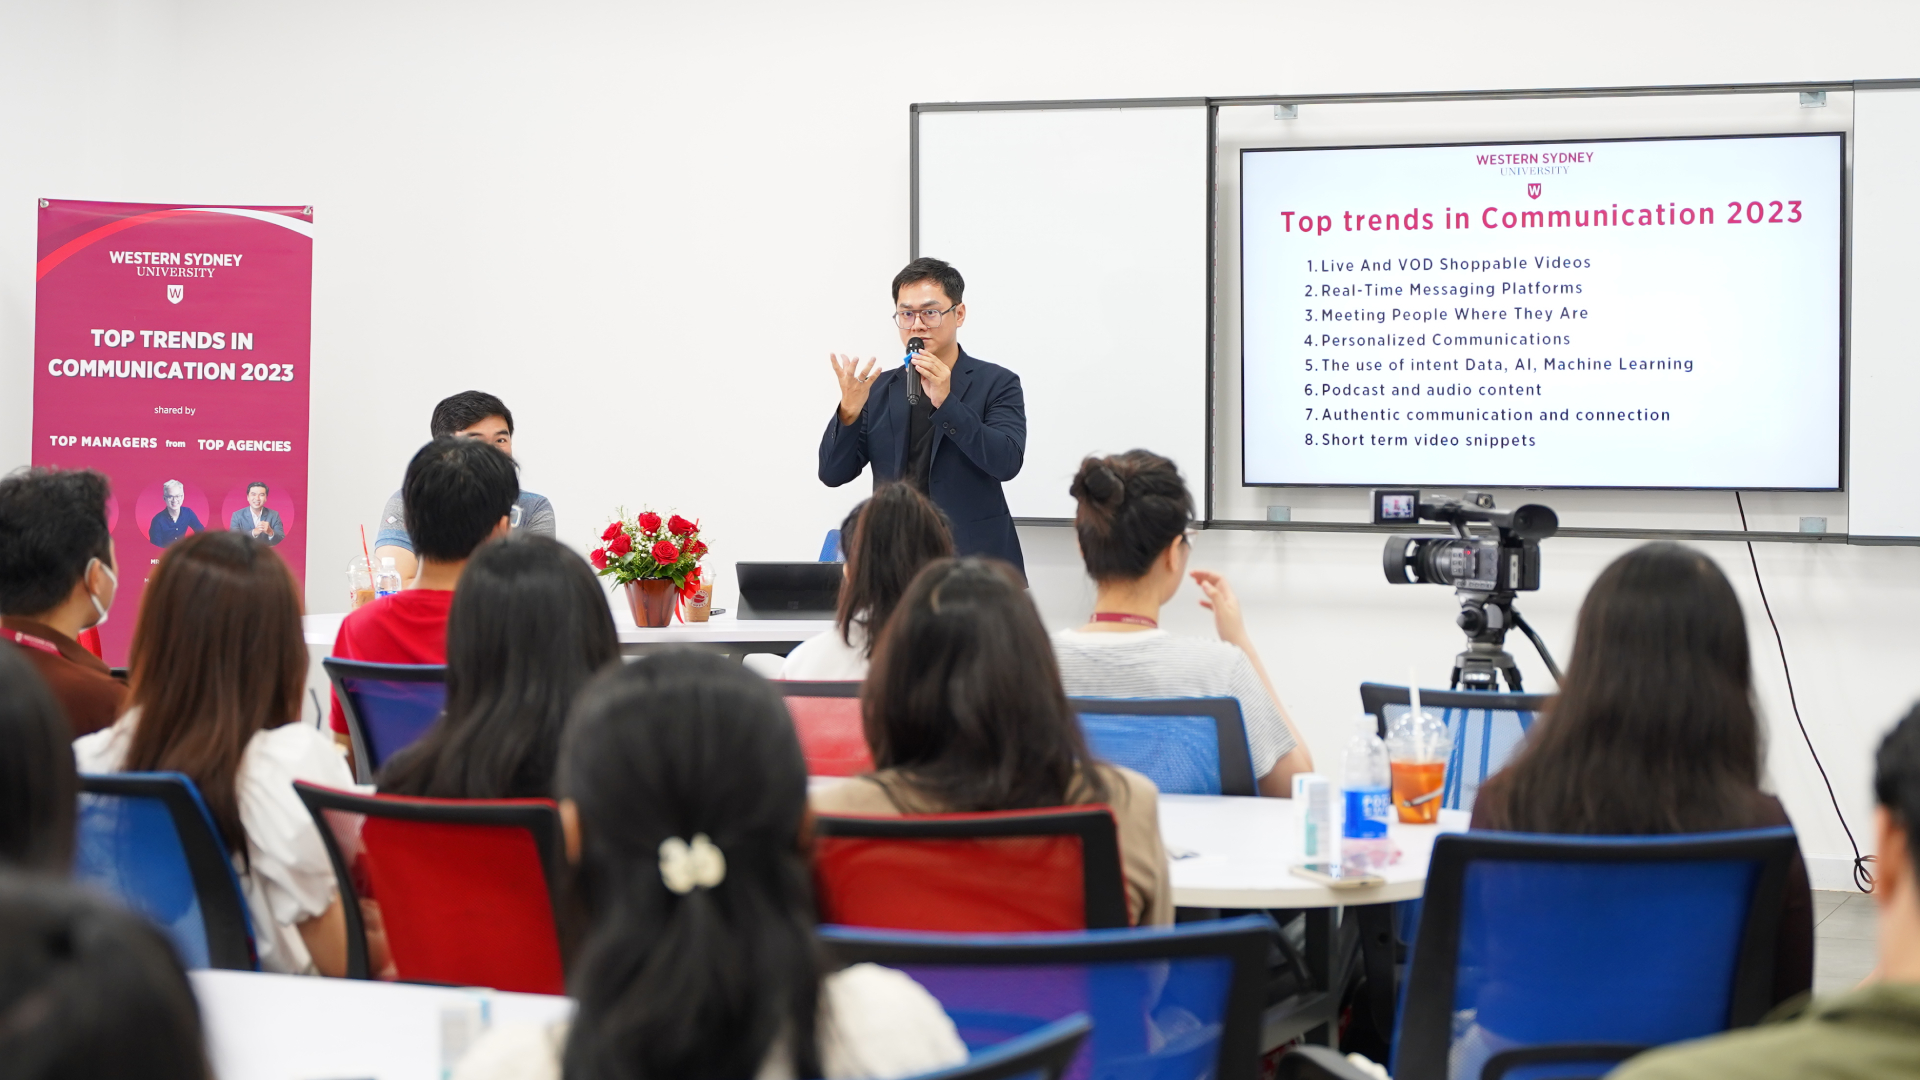 Mở đầu buổi workshop, thầy Phú đã đưa ra lời giải đáp về những thắc mắc thường gặp về ngành truyền thông